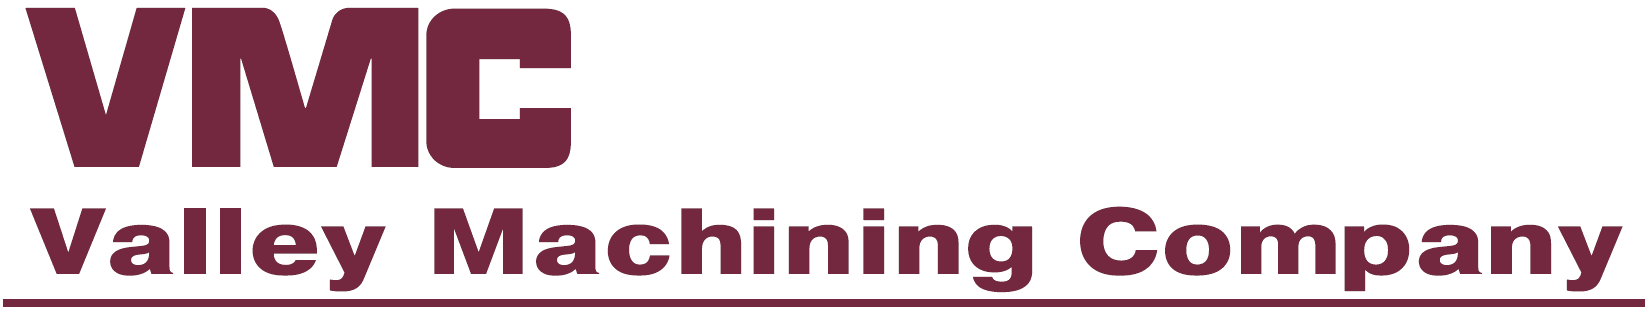 Valley Machining Company logo